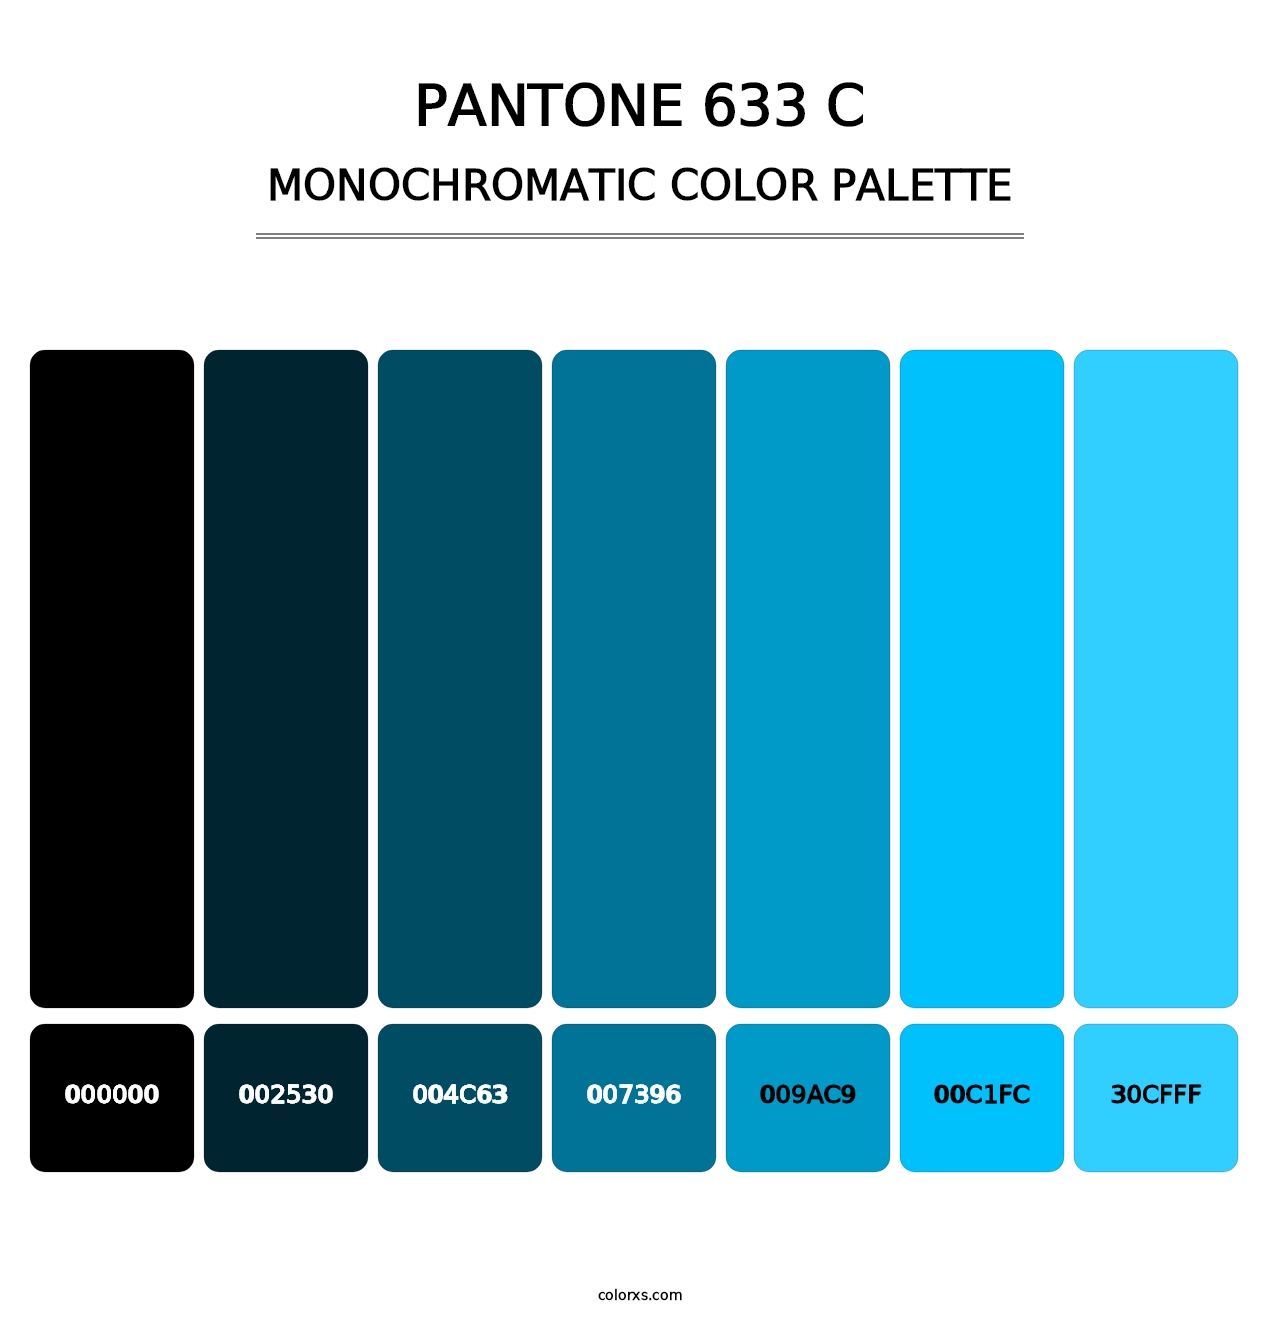 PANTONE 633 C - Monochromatic Color Palette